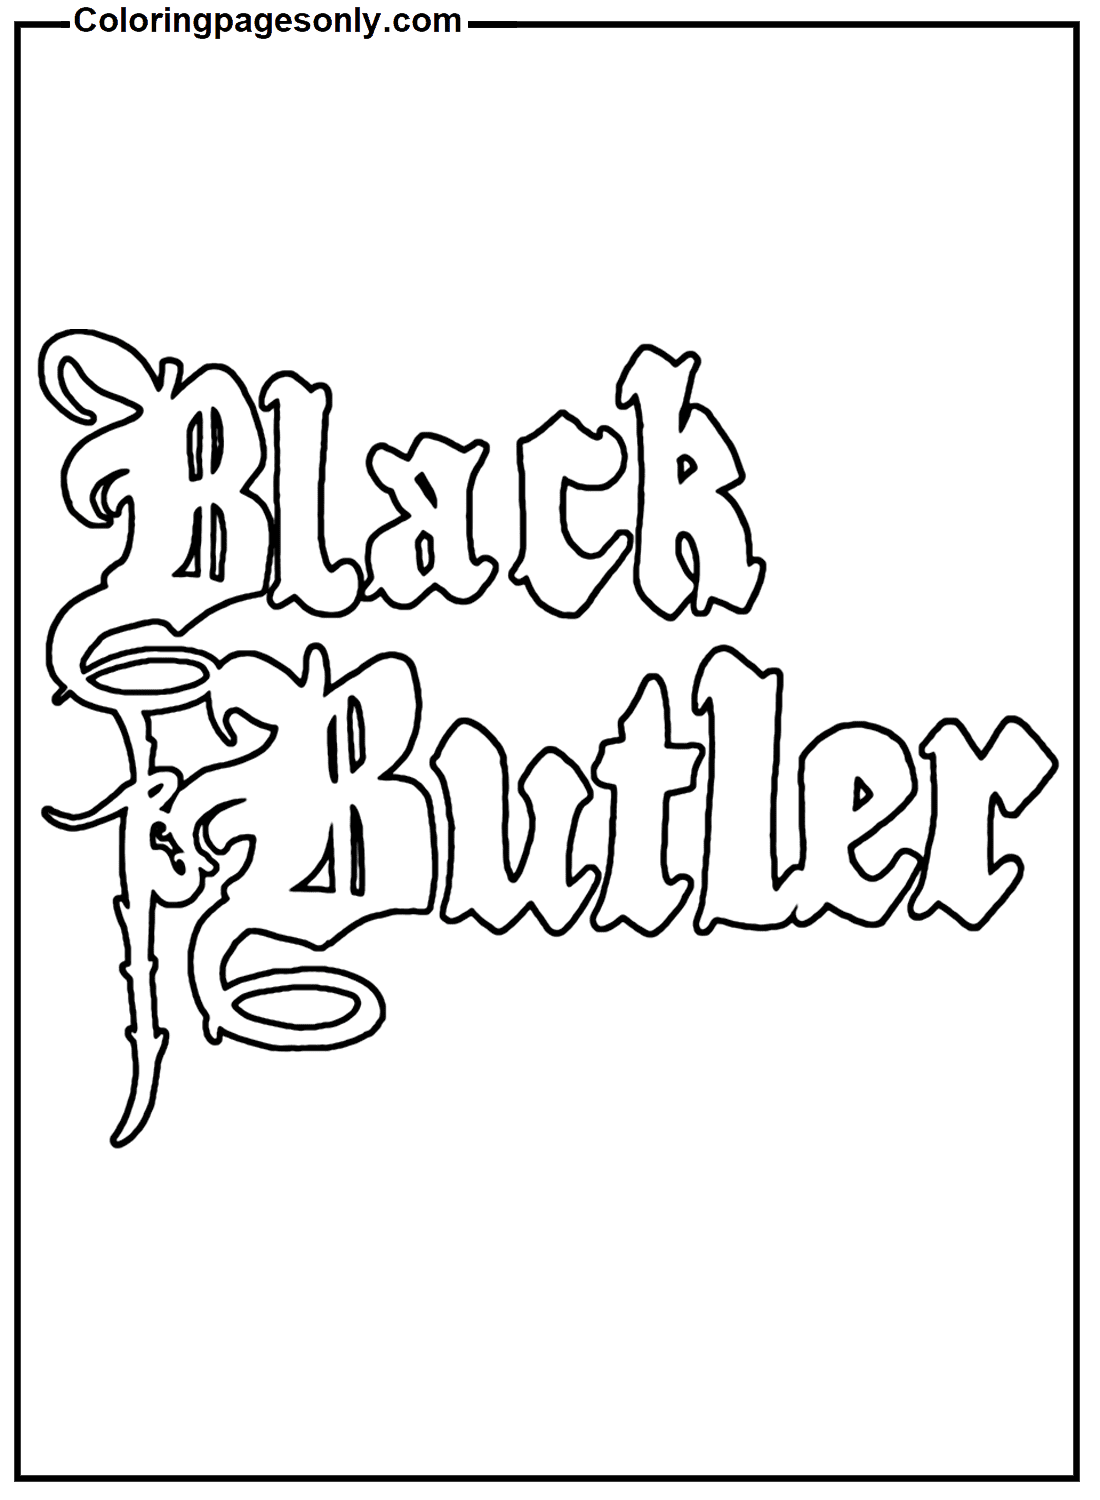 Logotipo Black Butler de Black Butler